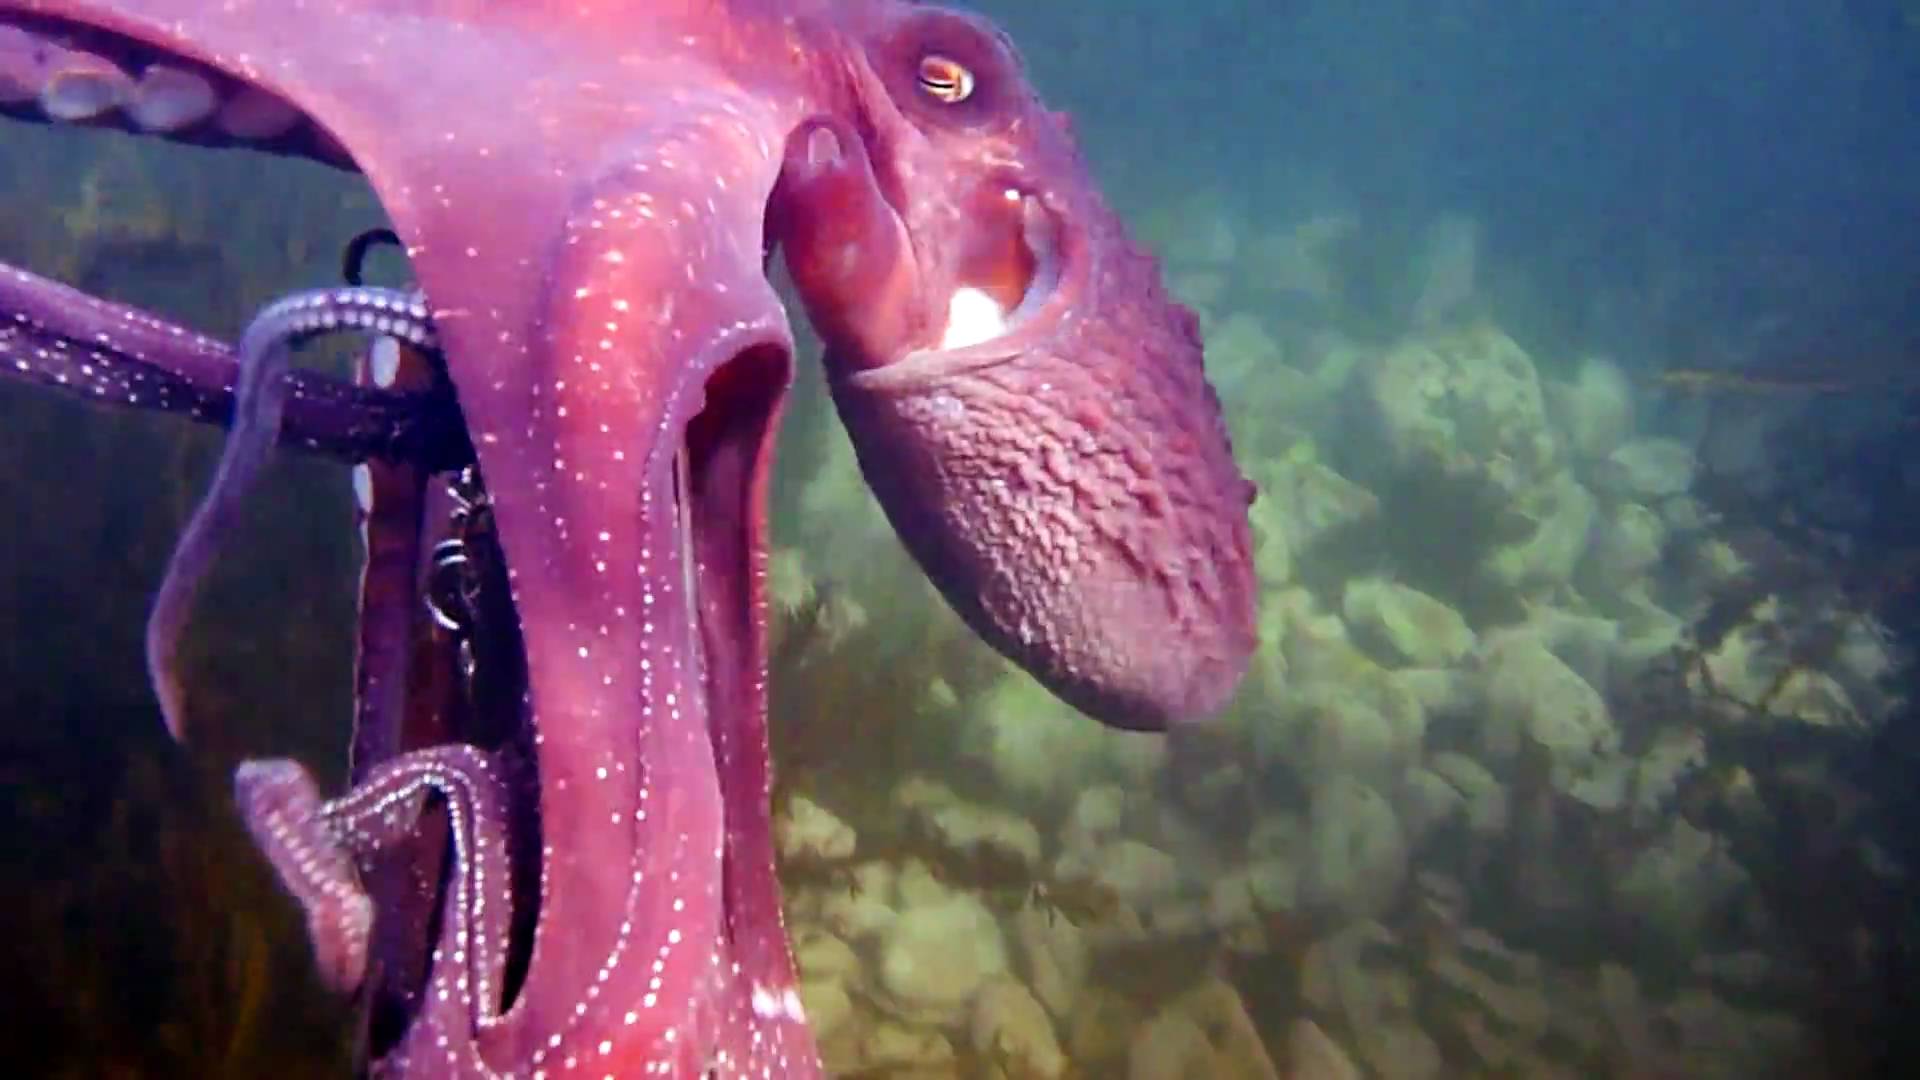   Viral Video: Octopus Steals Camera  